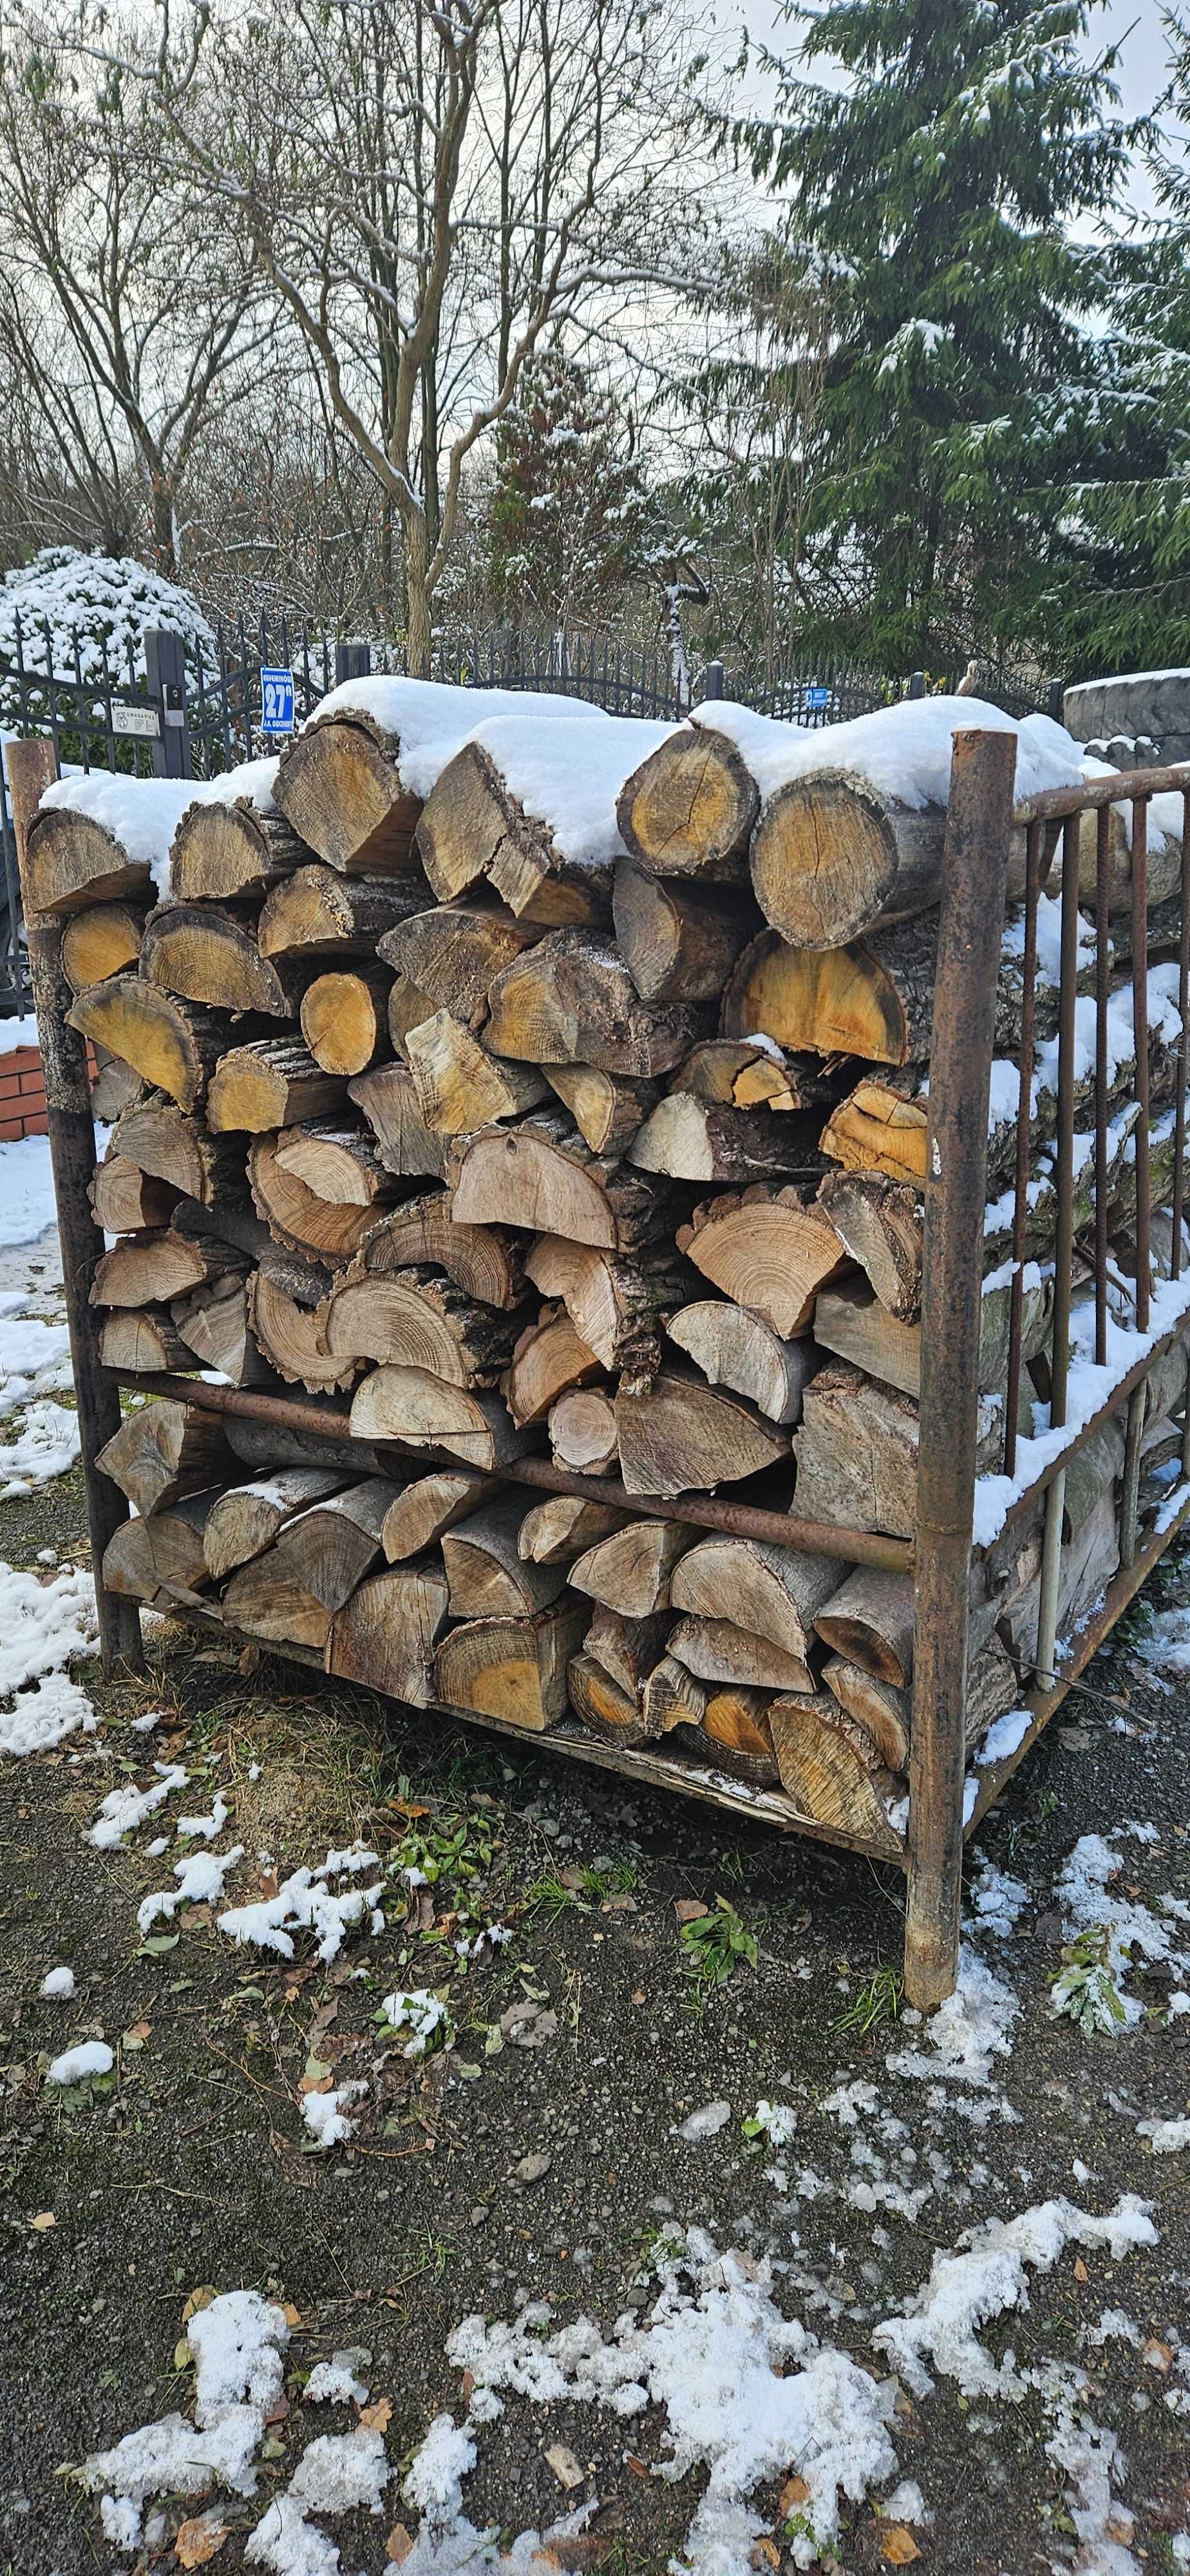 Drewno Opałowe i Kominkowe rabat do 10 % promocja